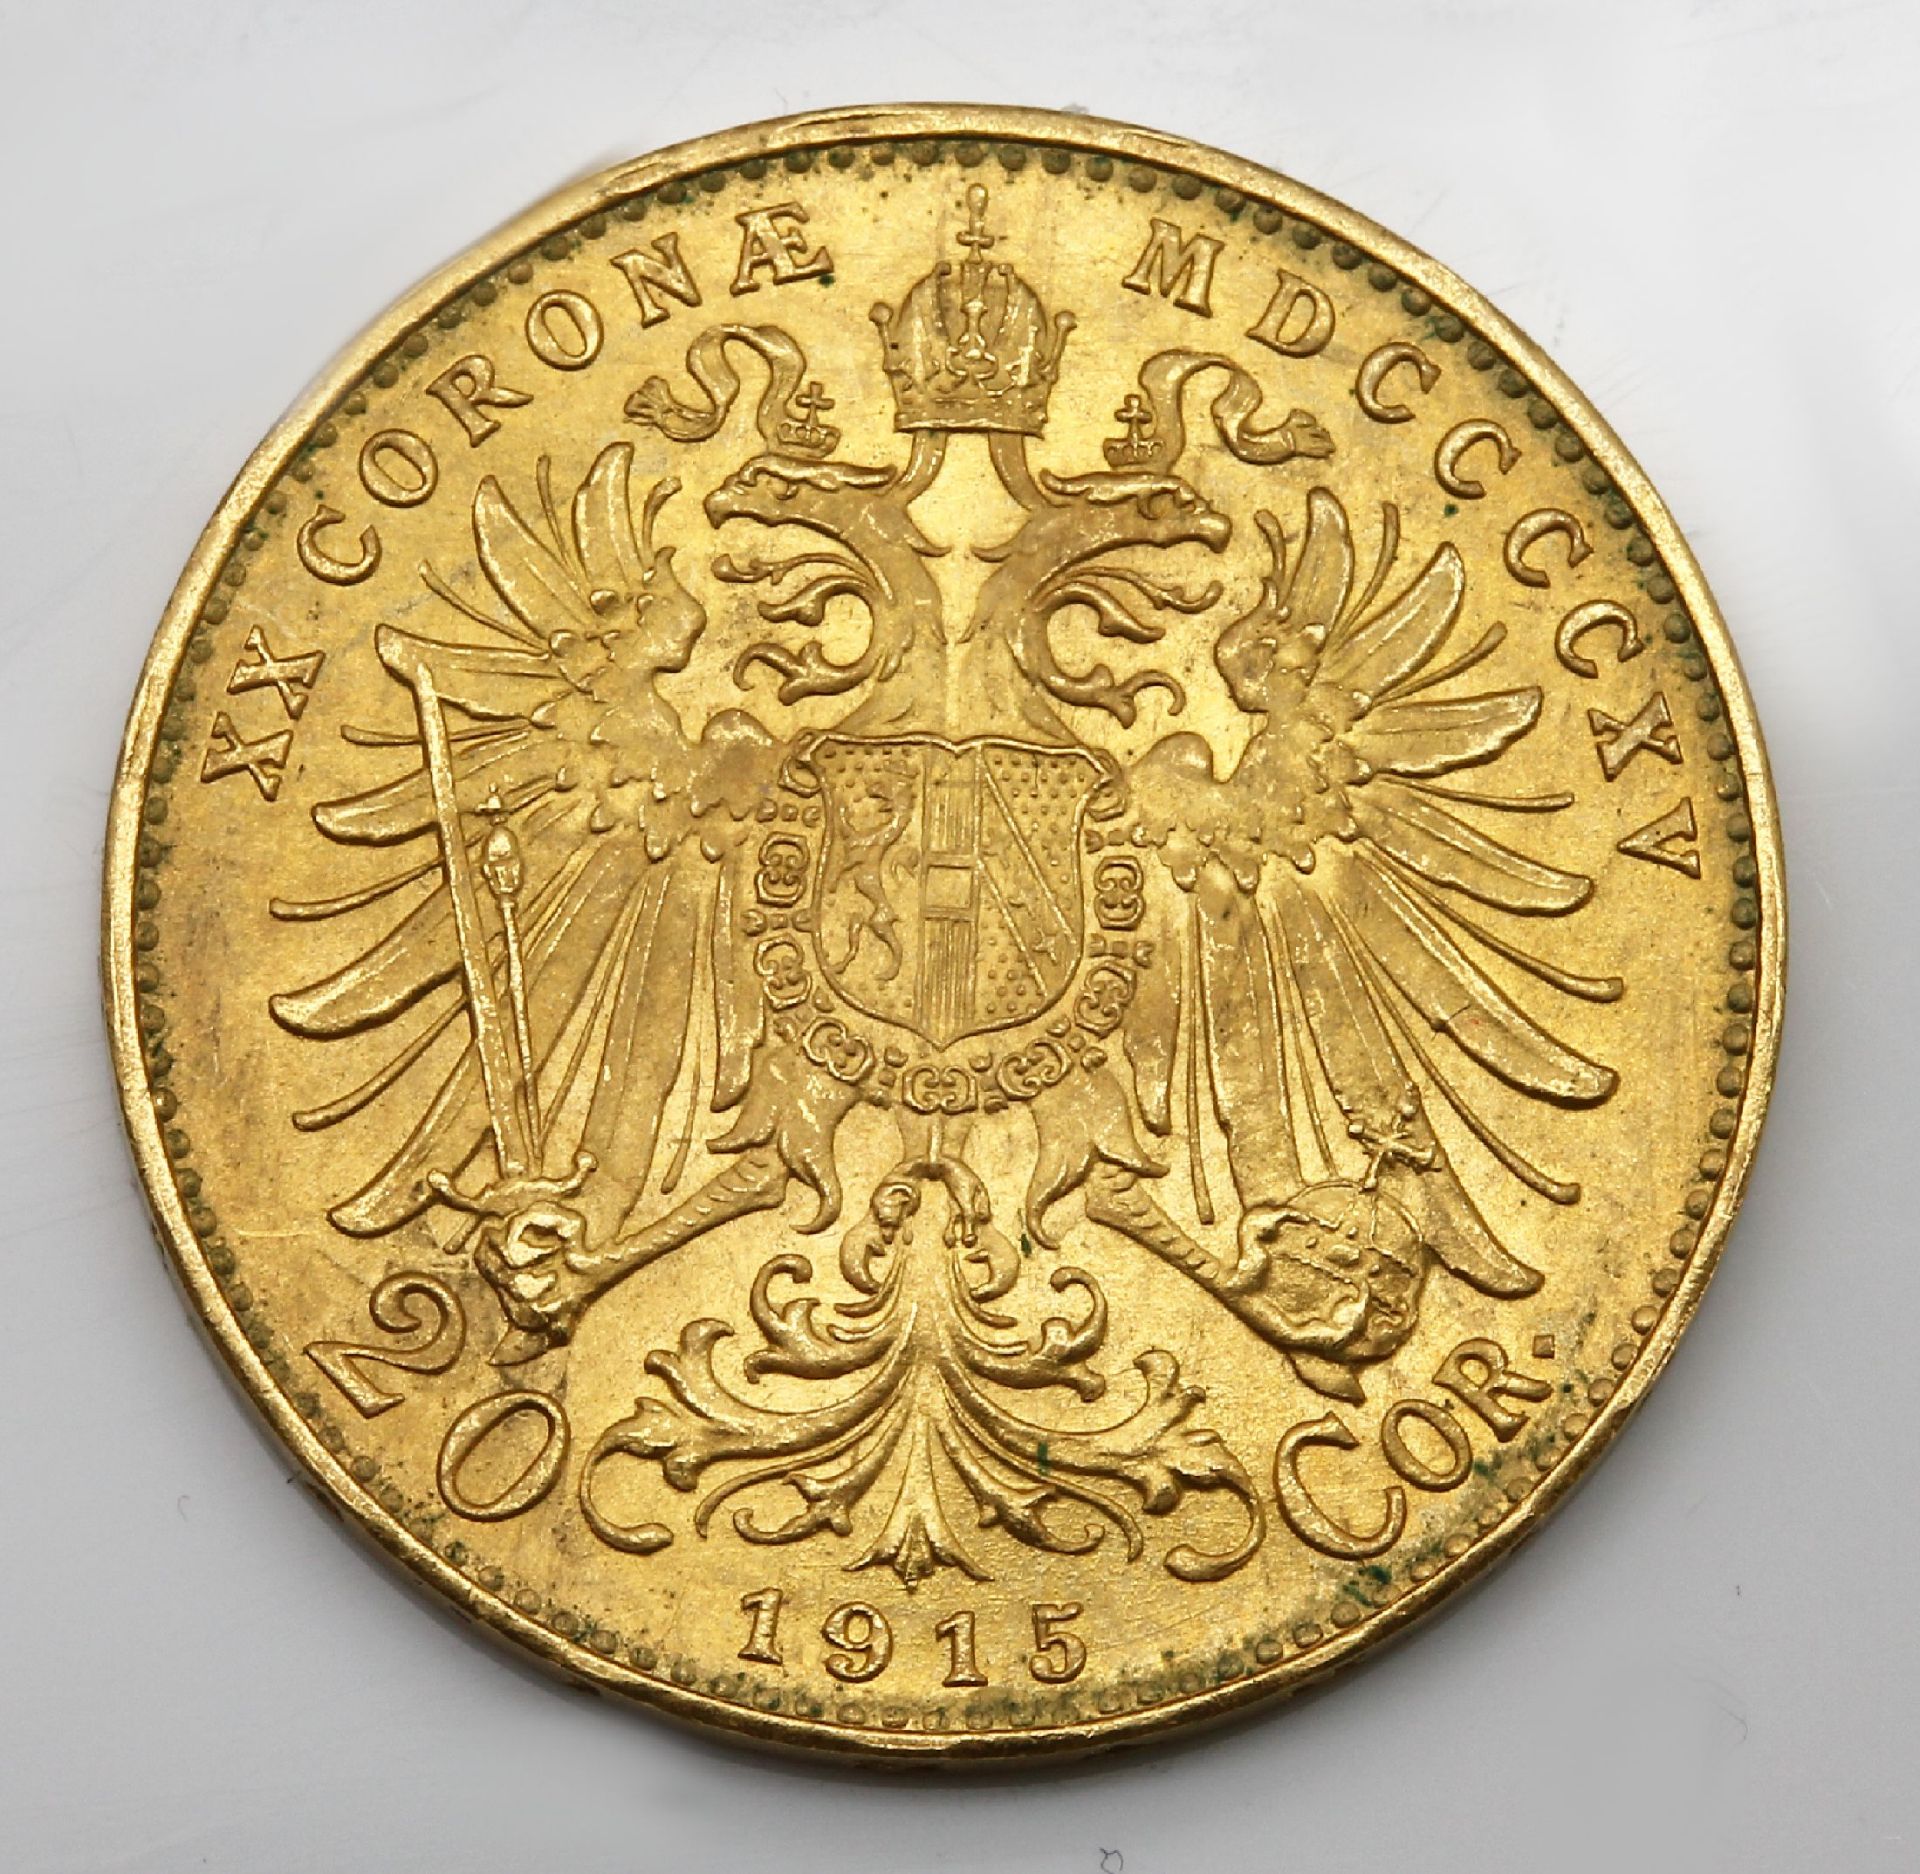 Goldmünze 20 Kronen Franz Josef von Österreich1915, - Image 2 of 3